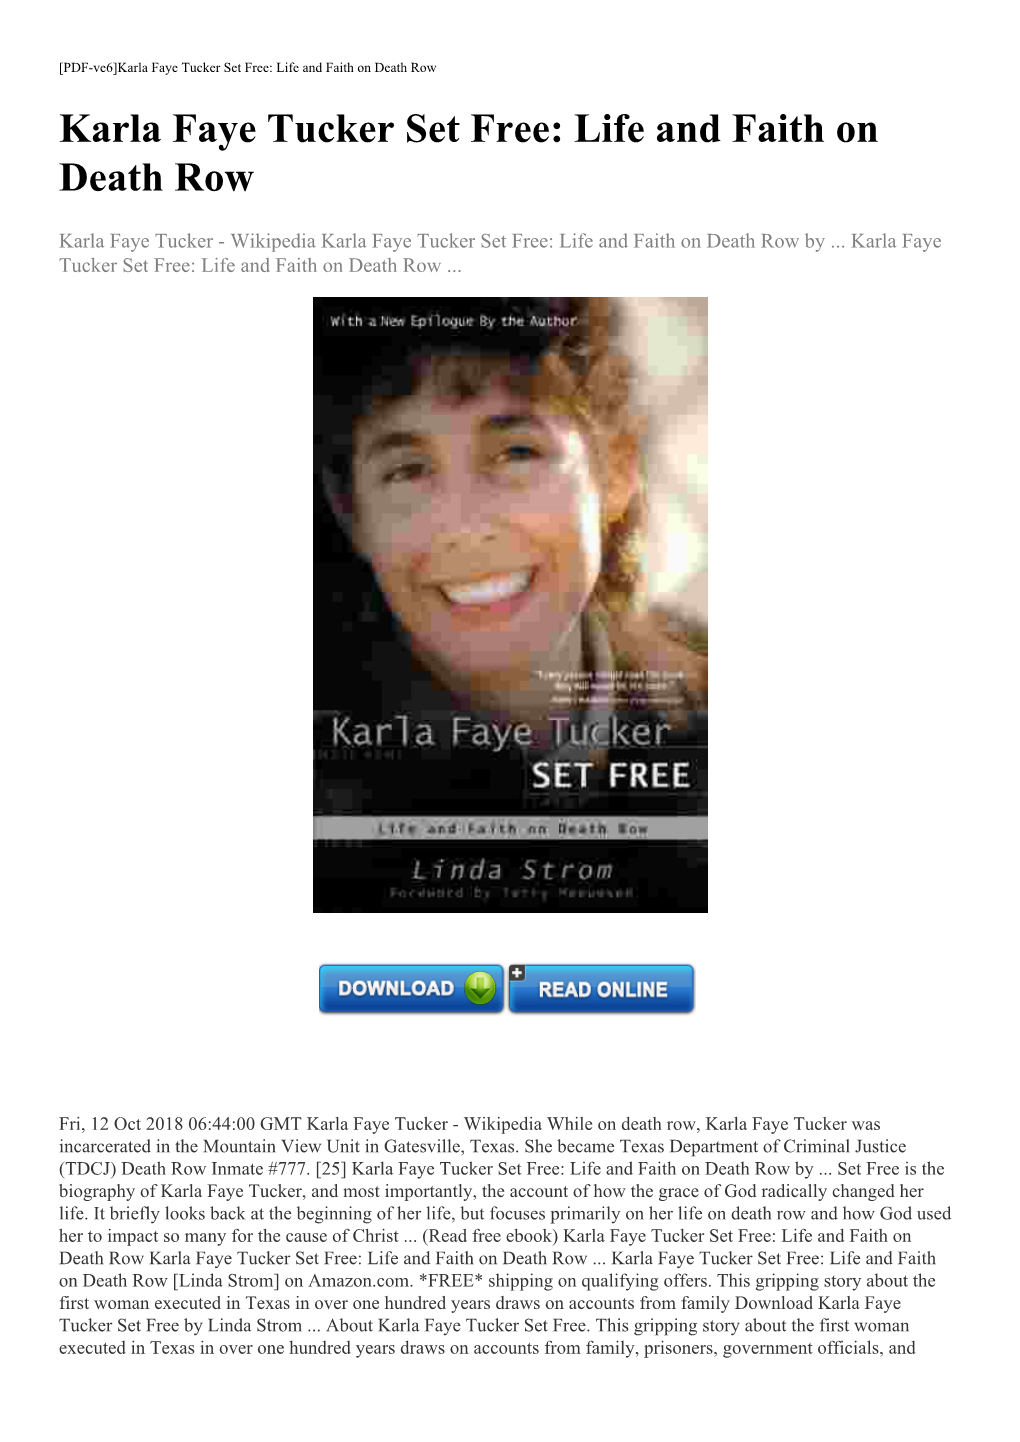 (Read Free Ebook) Karla Faye Tucker Set Free: Life and Faith on Death Row Karla Faye Tucker Set Free: Life and Faith on Death Row